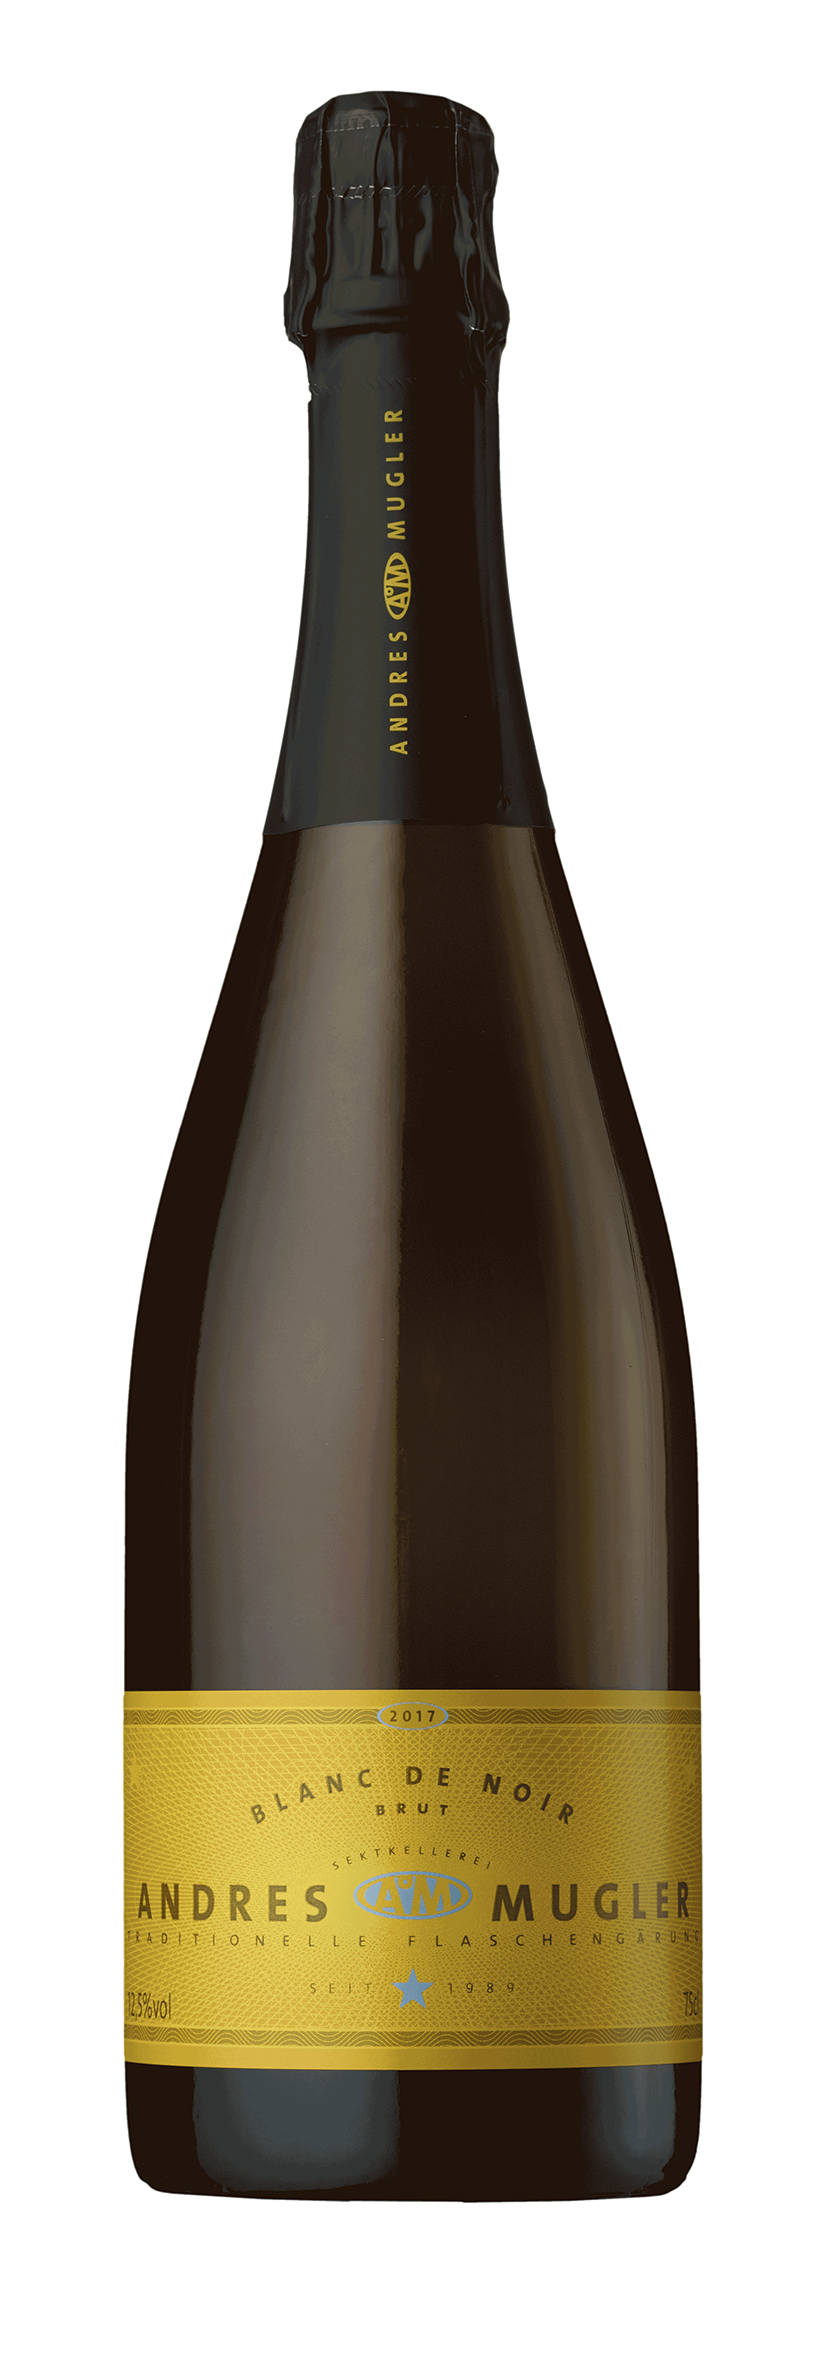 Pinot Sekt Brut Blanc de Noir 2017